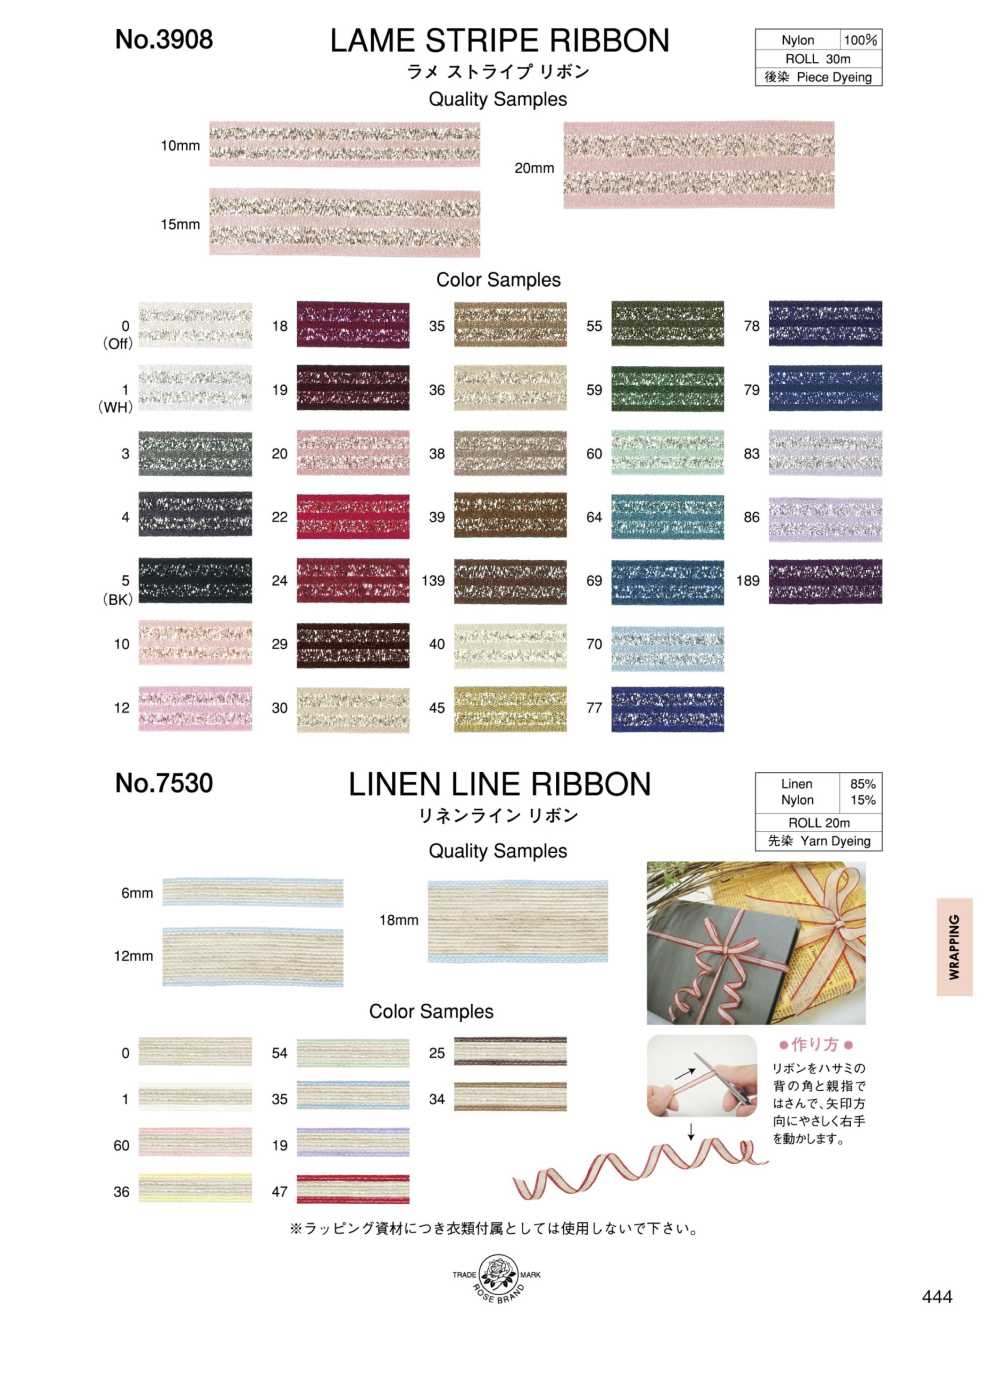 7530 Linen Line Ribbon[Ribbon Tape Cord] ROSE BRAND (Marushin)